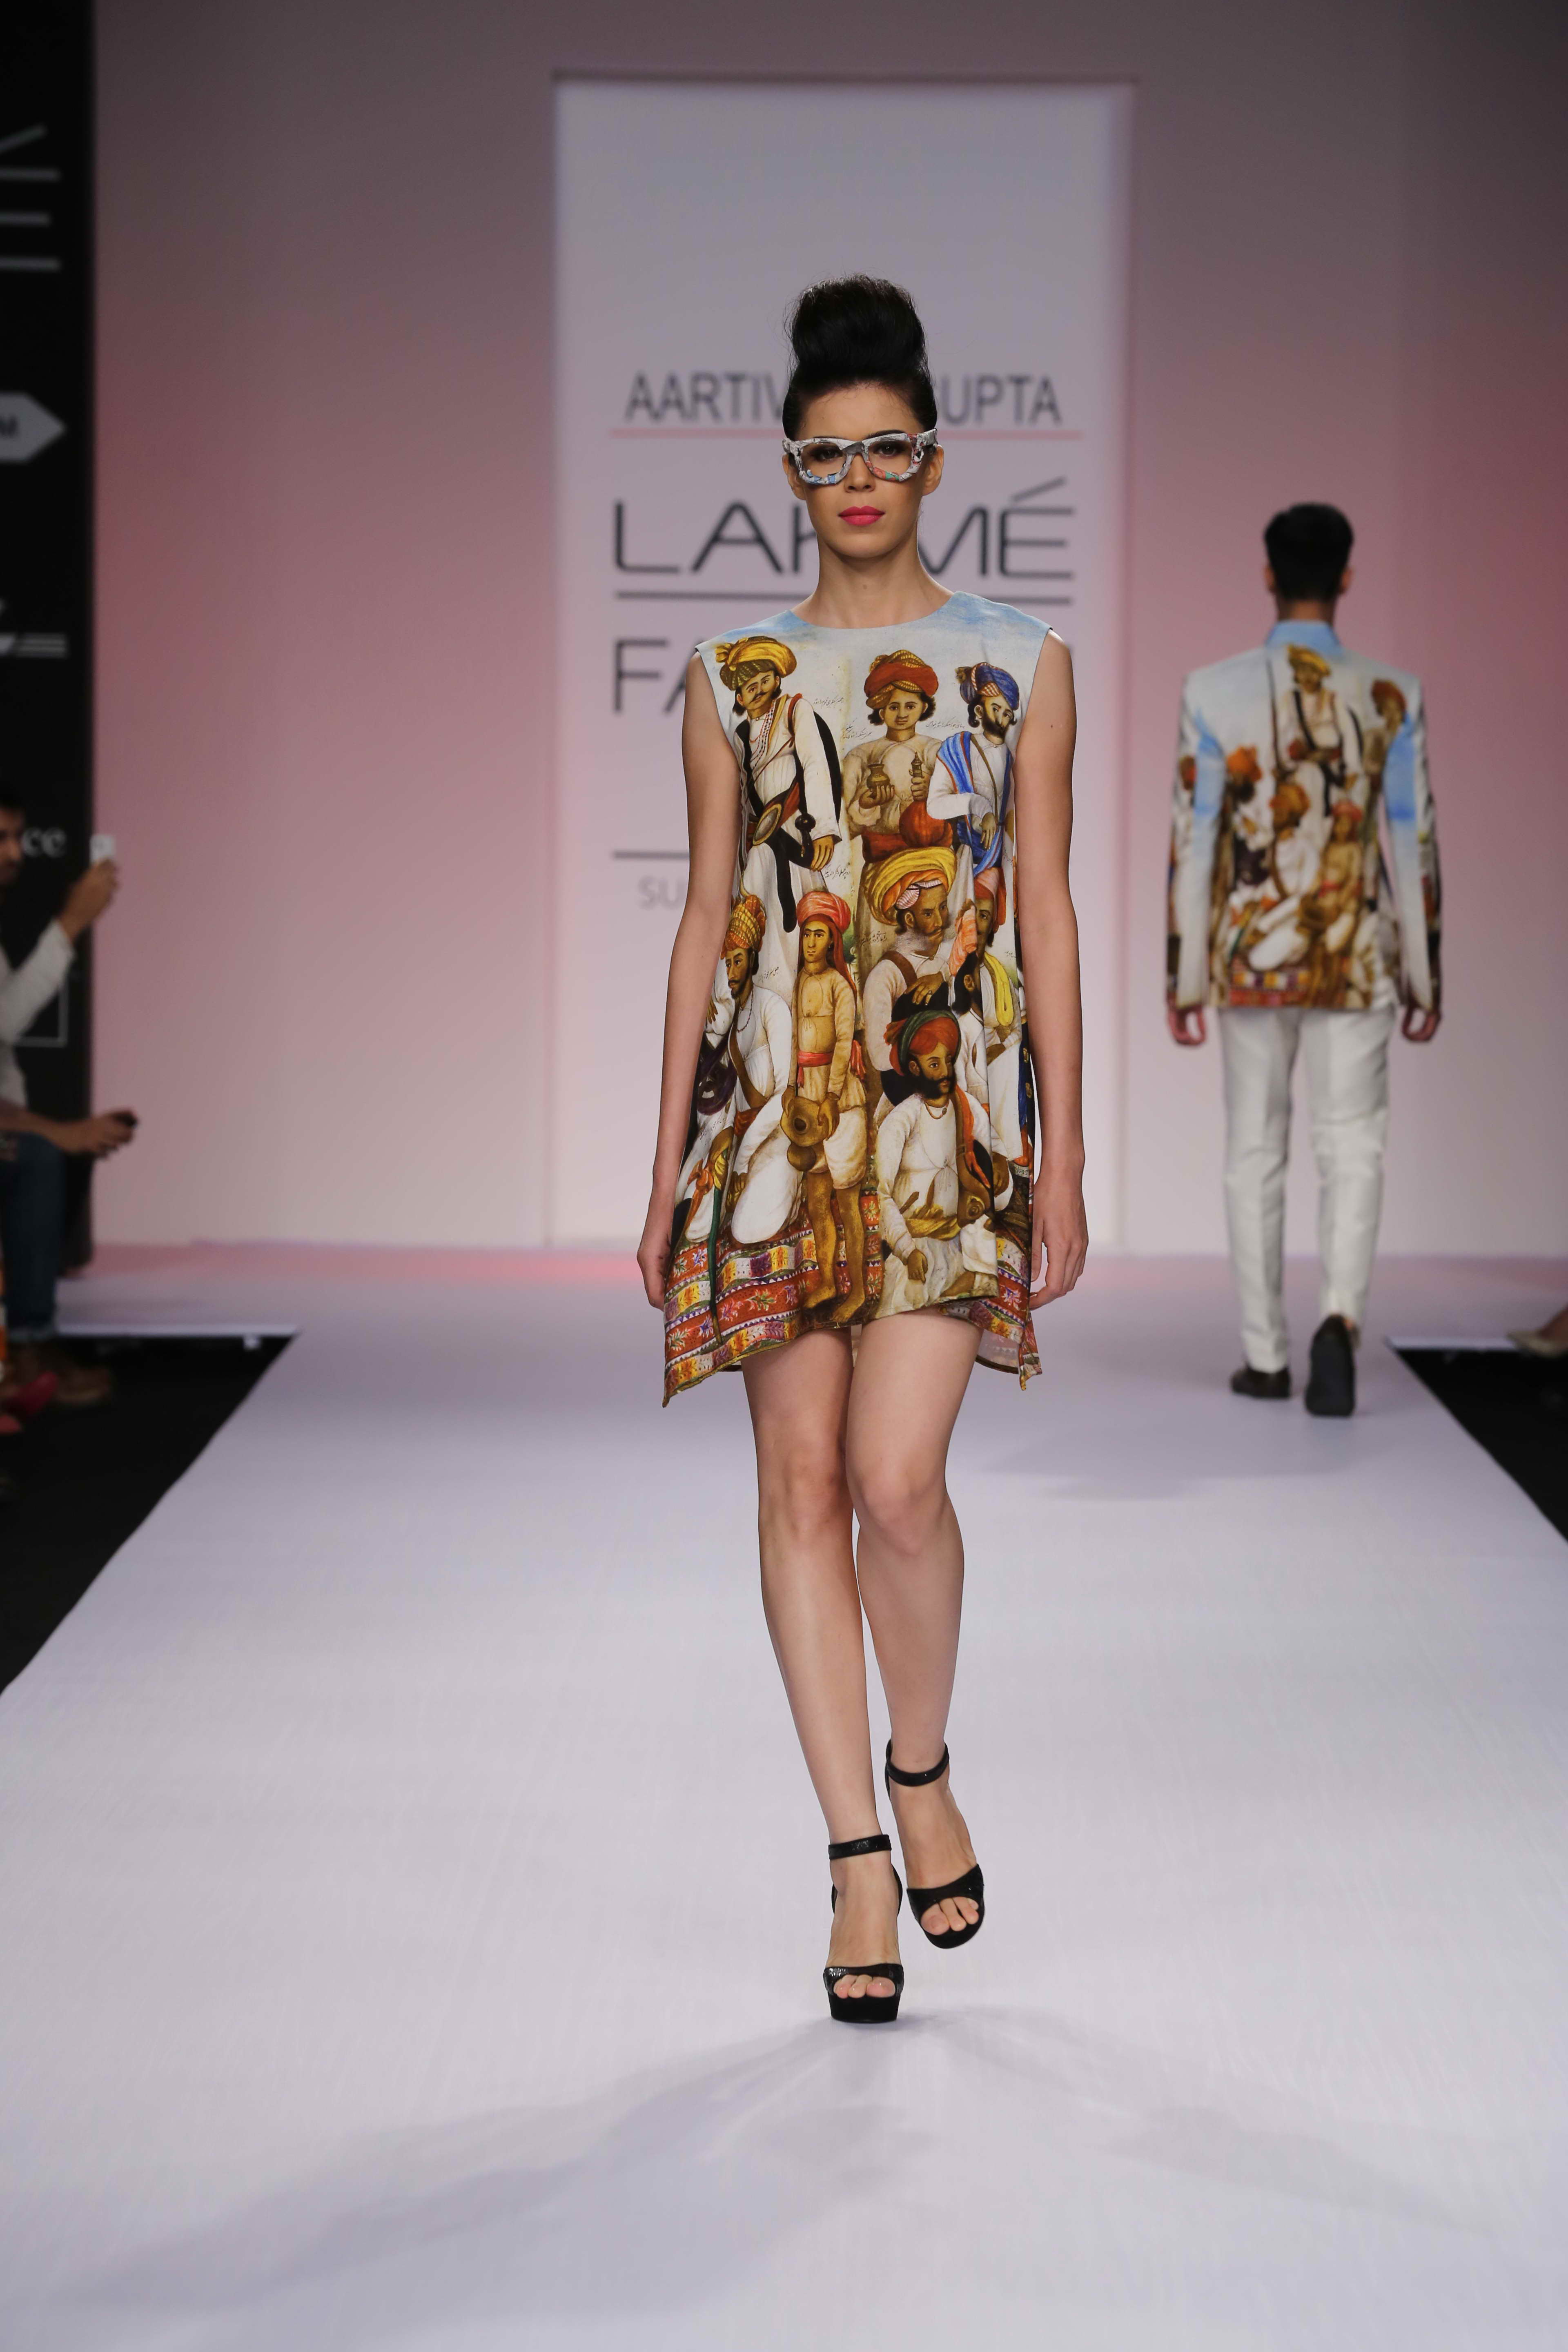 Lakme Fashion Week 2014 Day Two: Mandira Bedi Makes Her Designer Debut ...